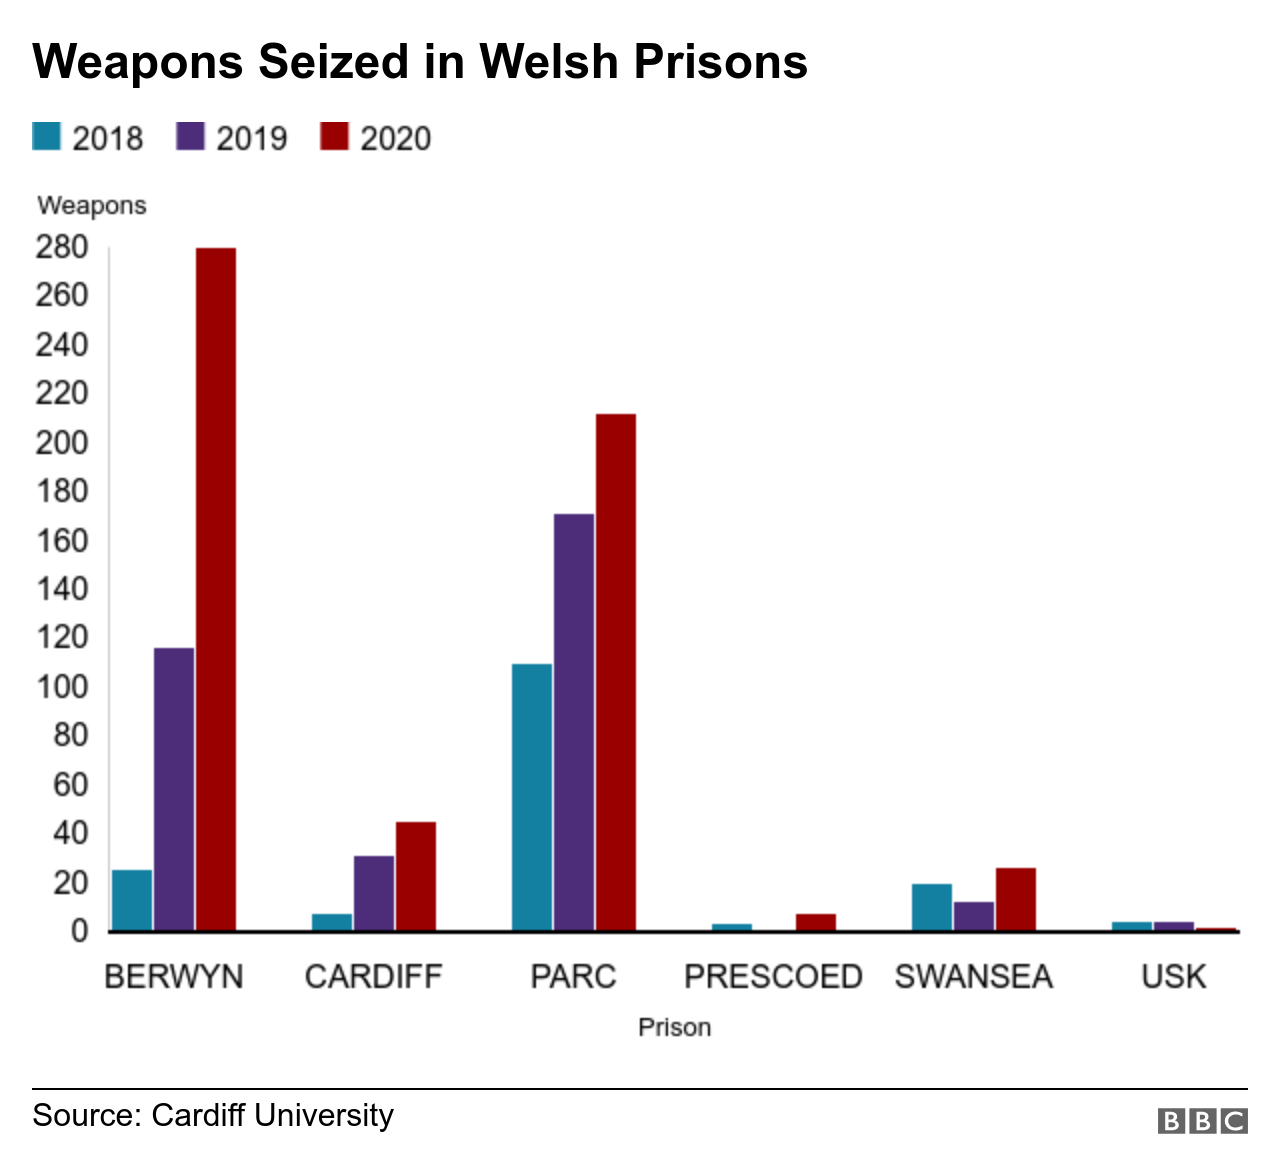 График количества оружия, изъятого в тюрьмах Уэльса на 2018-2020 годы